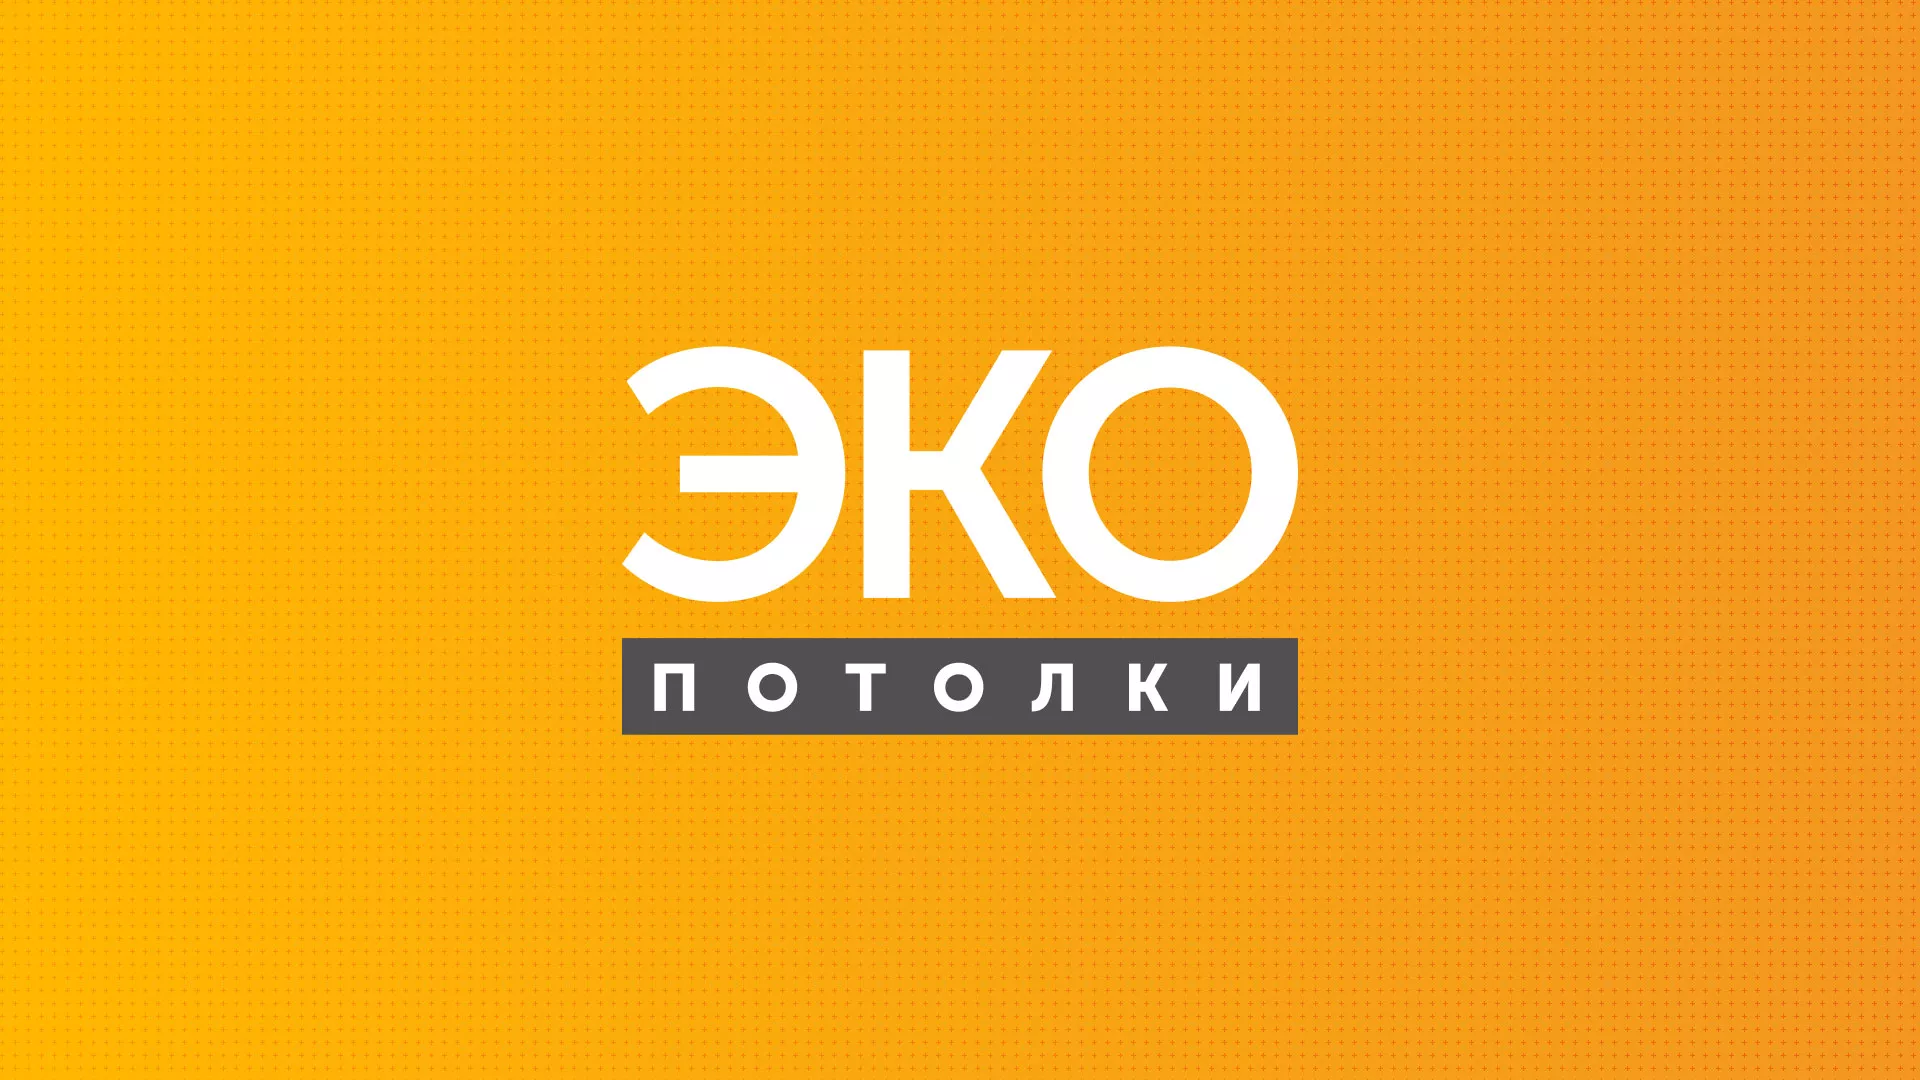 Разработка сайта по натяжным потолкам «Эко Потолки» в Заволжске